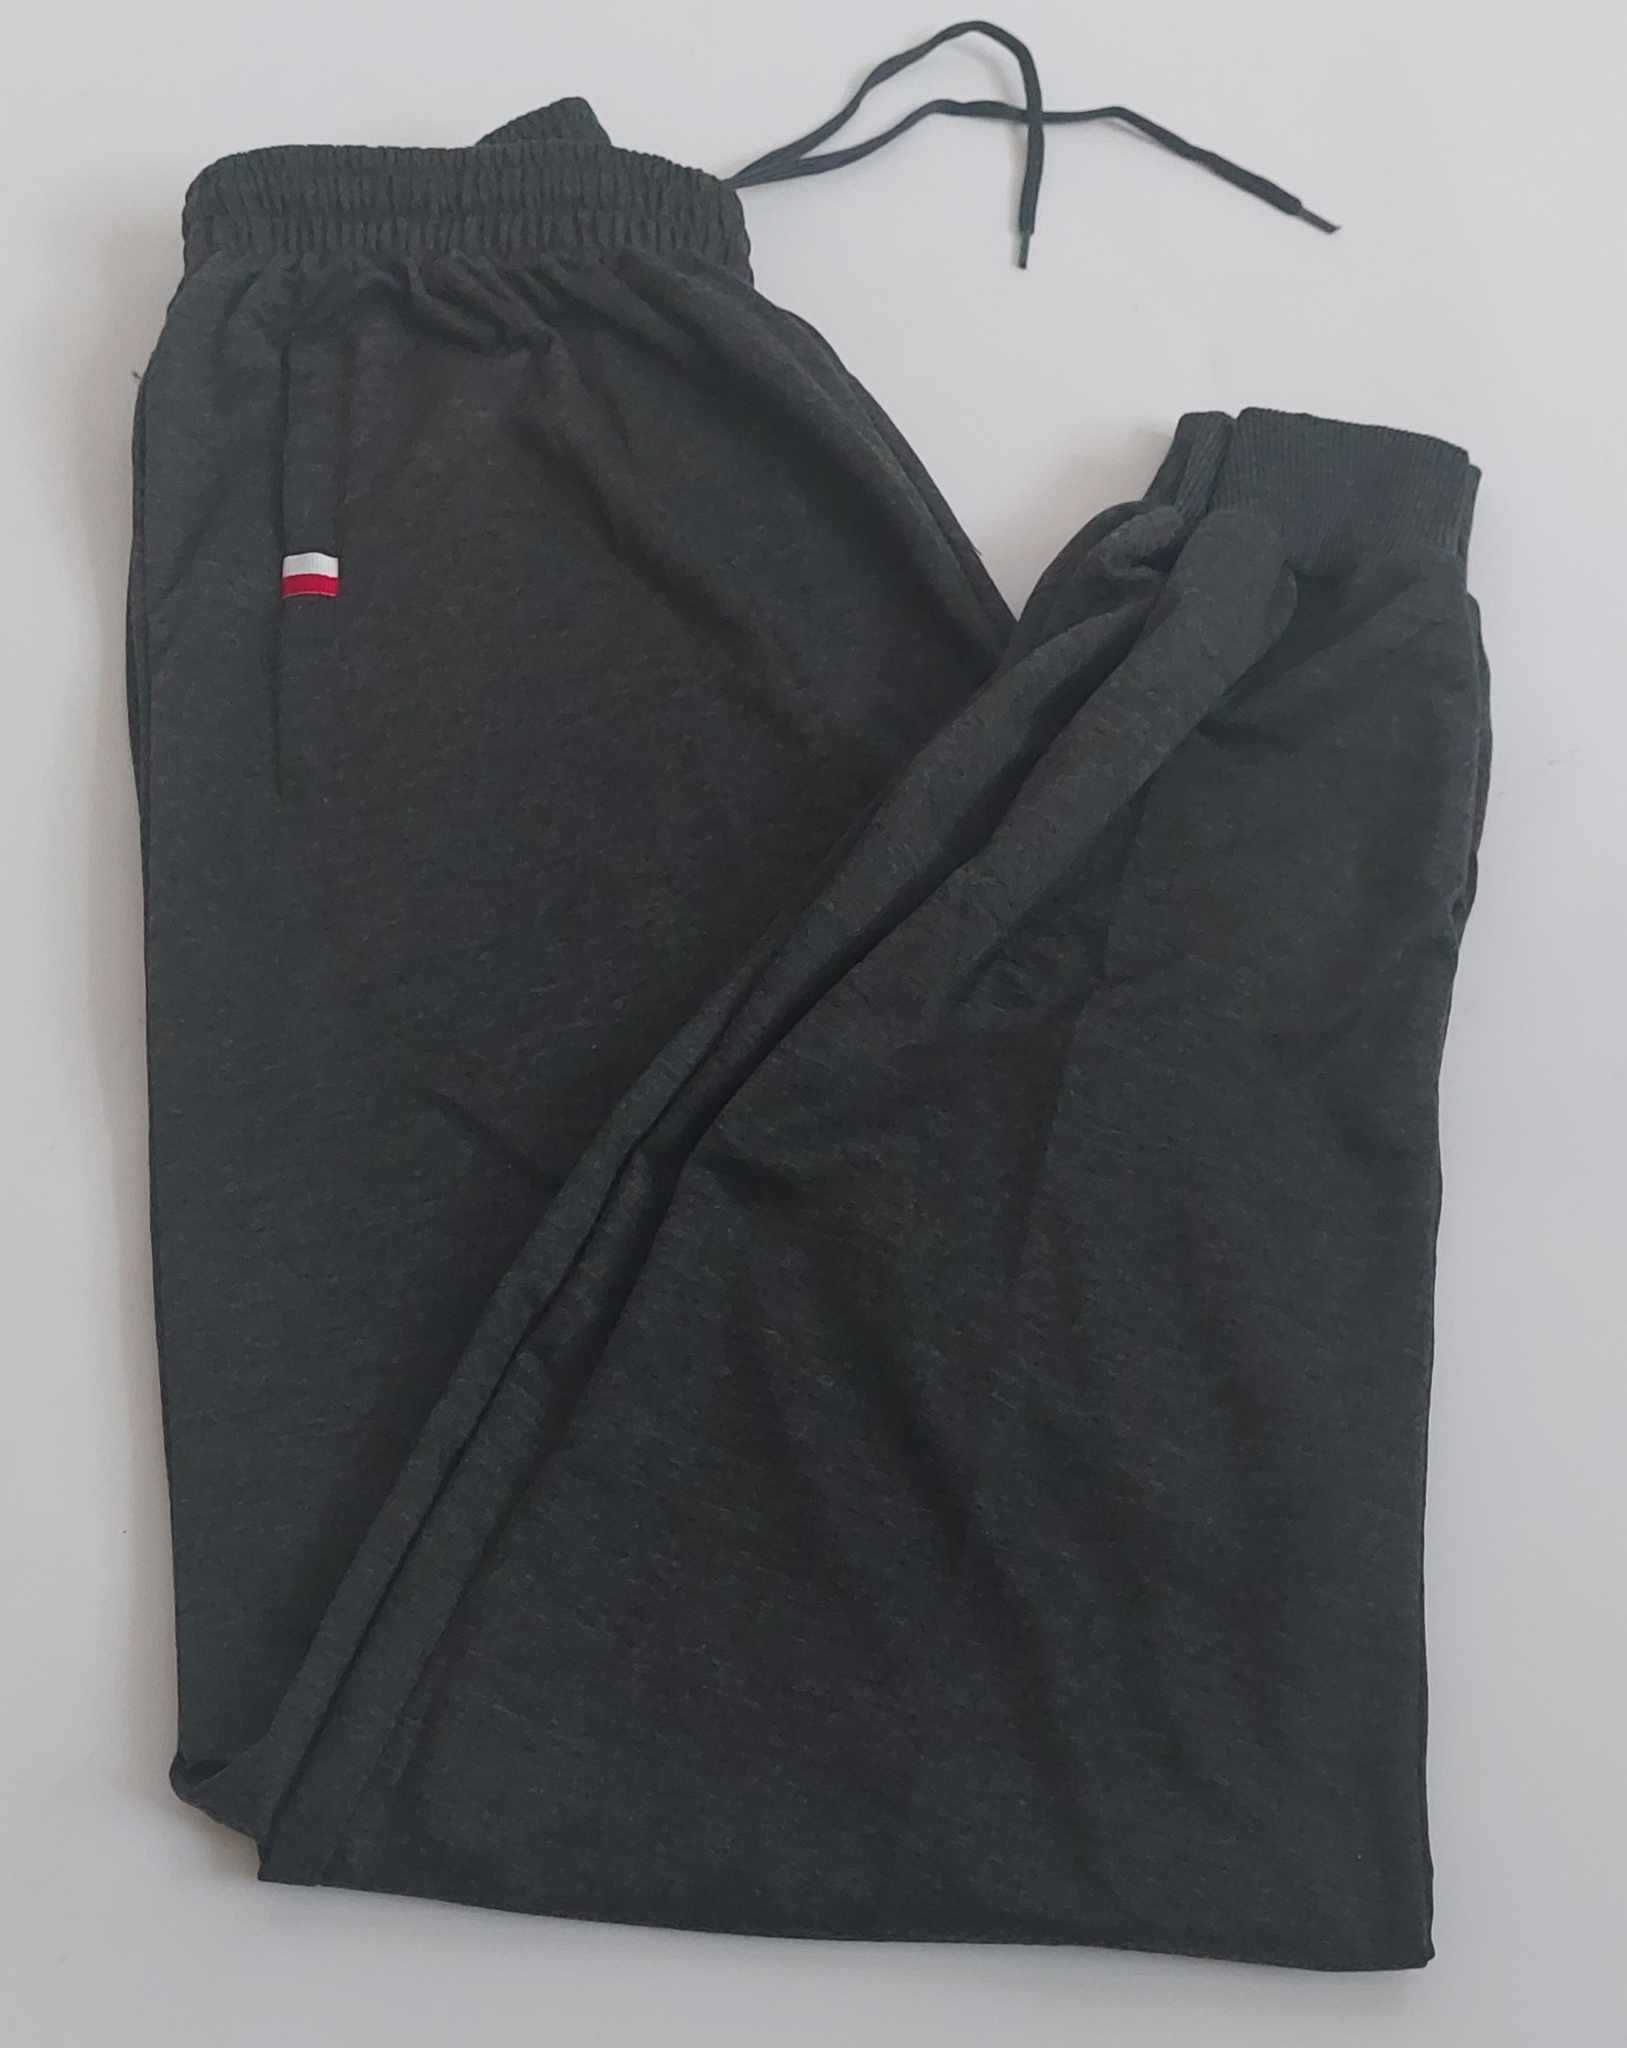 Spodnie męskie dresowe grafit ze ściągaczami LINTEBOB Y-46333-LK r 5XL